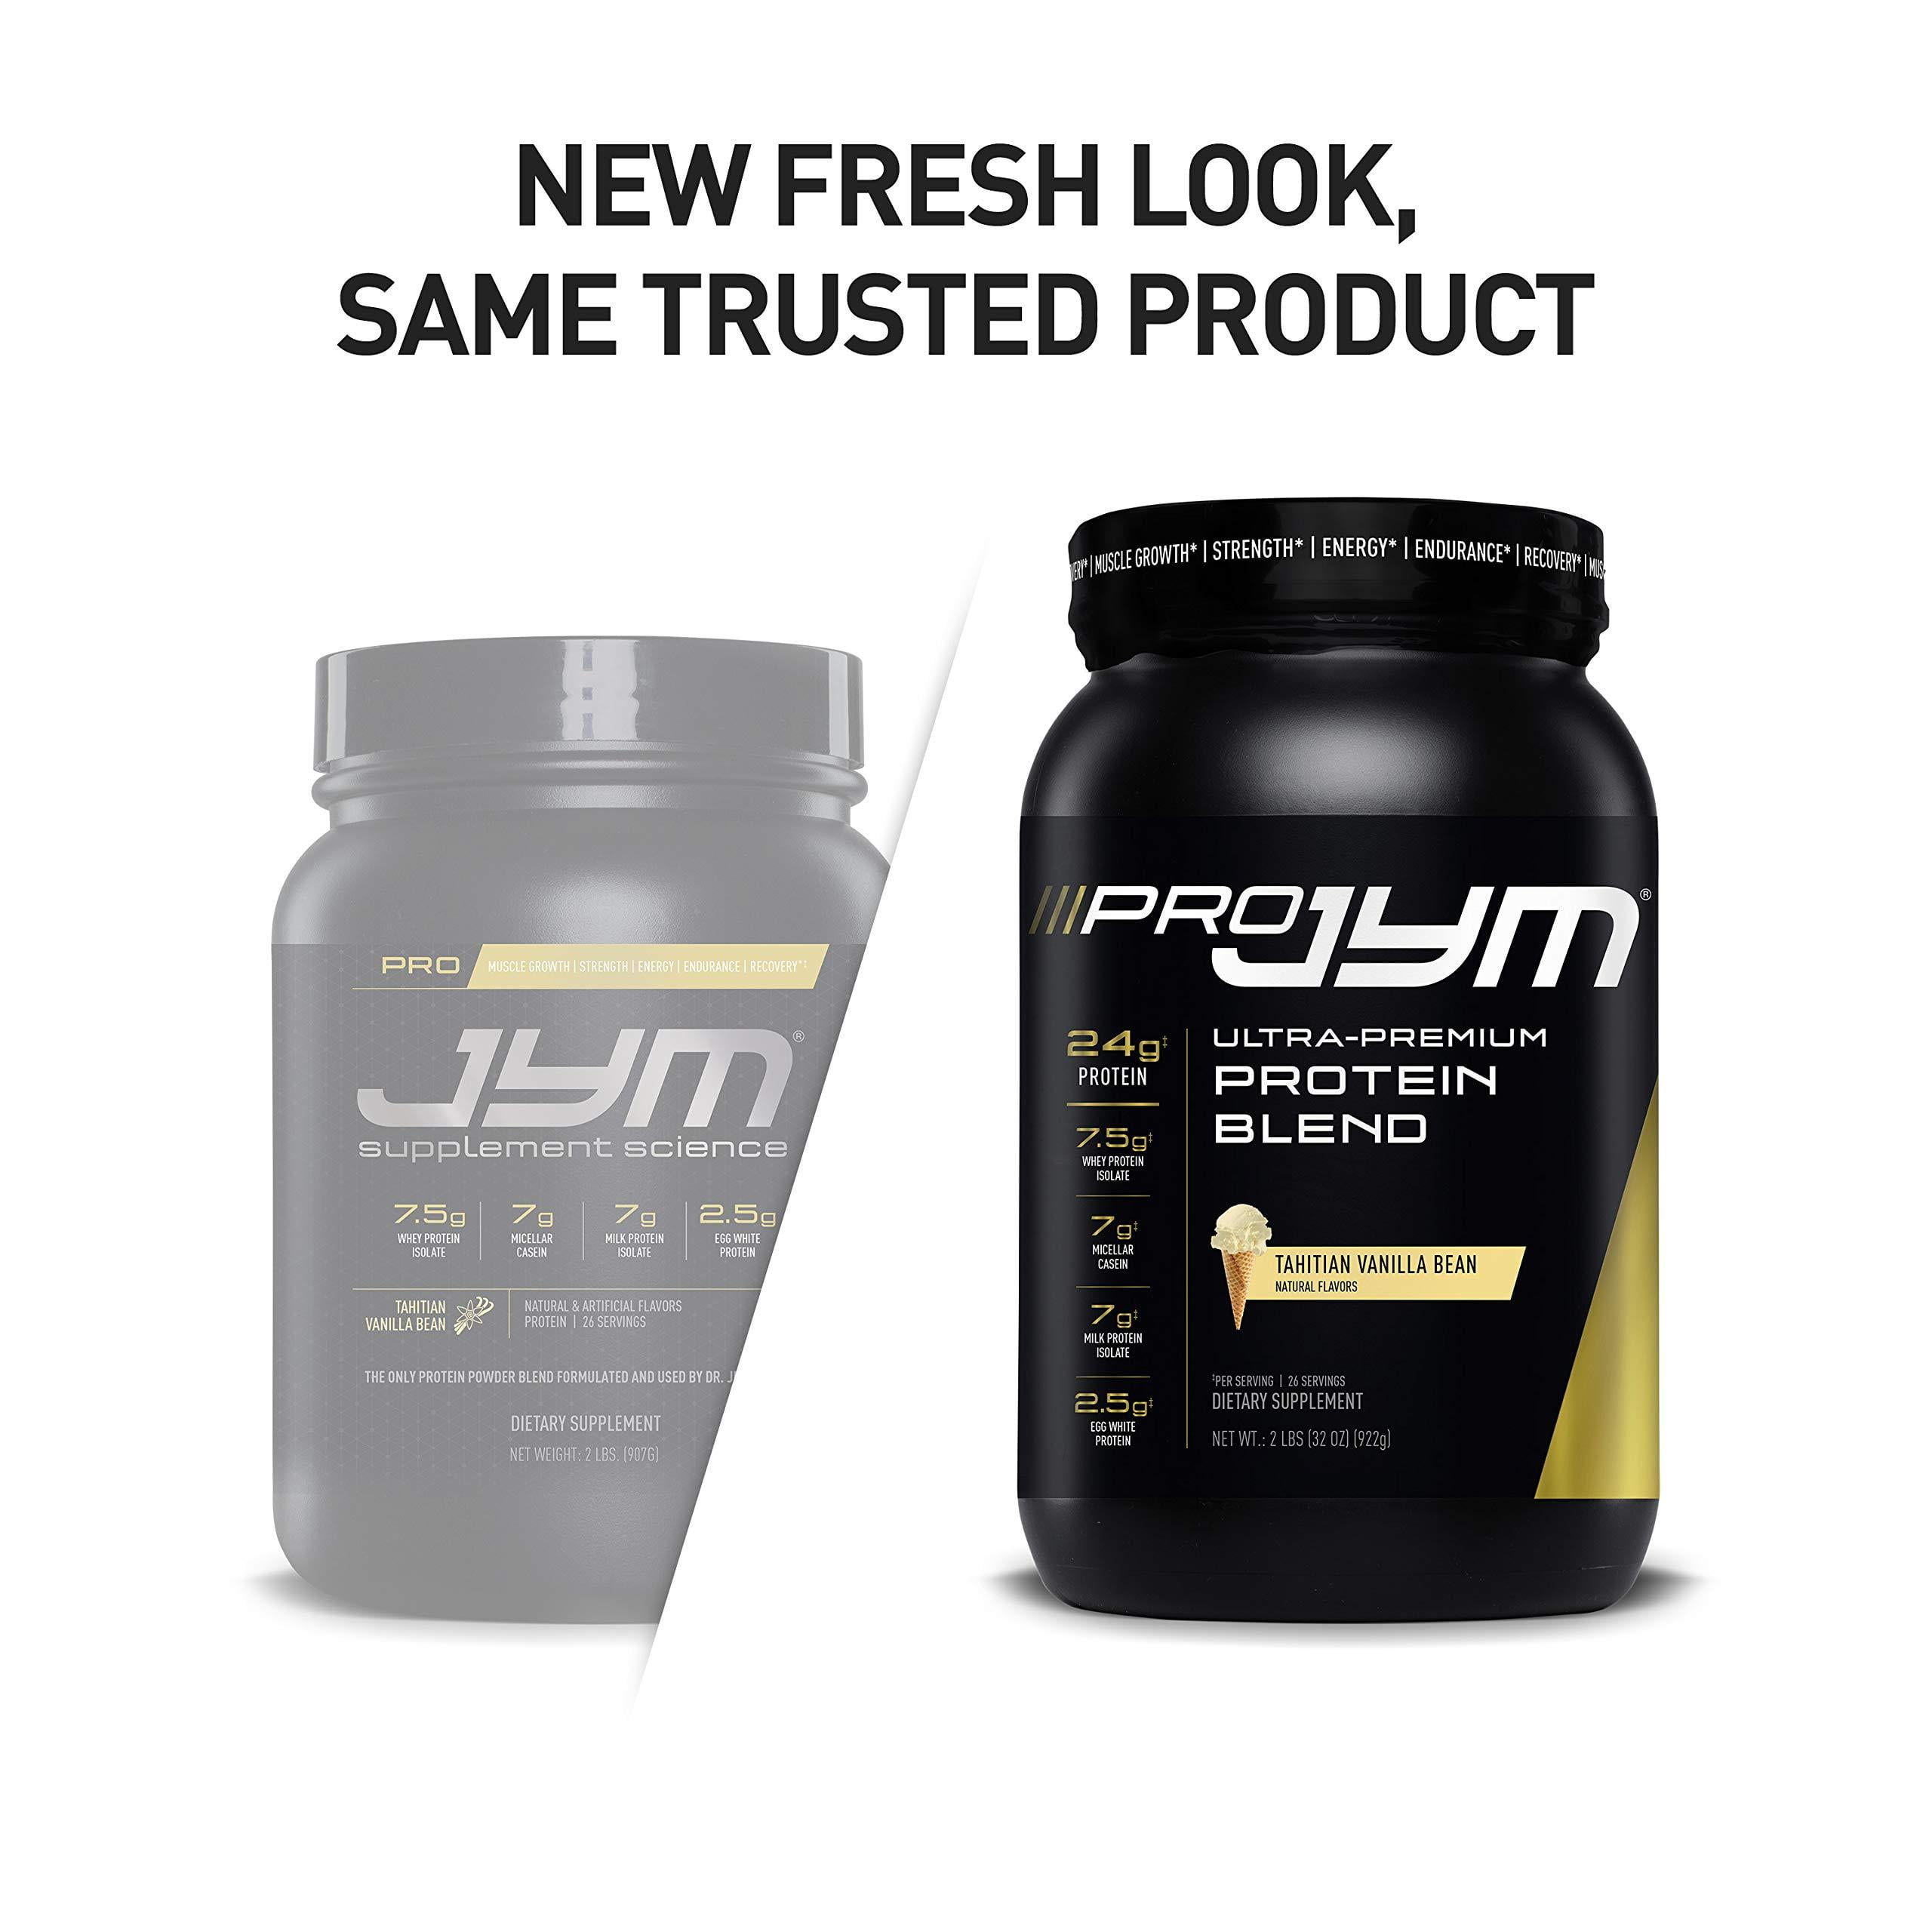 Pro JYM Protein Powder - Egg White, Milk, Whey Protein Isolates